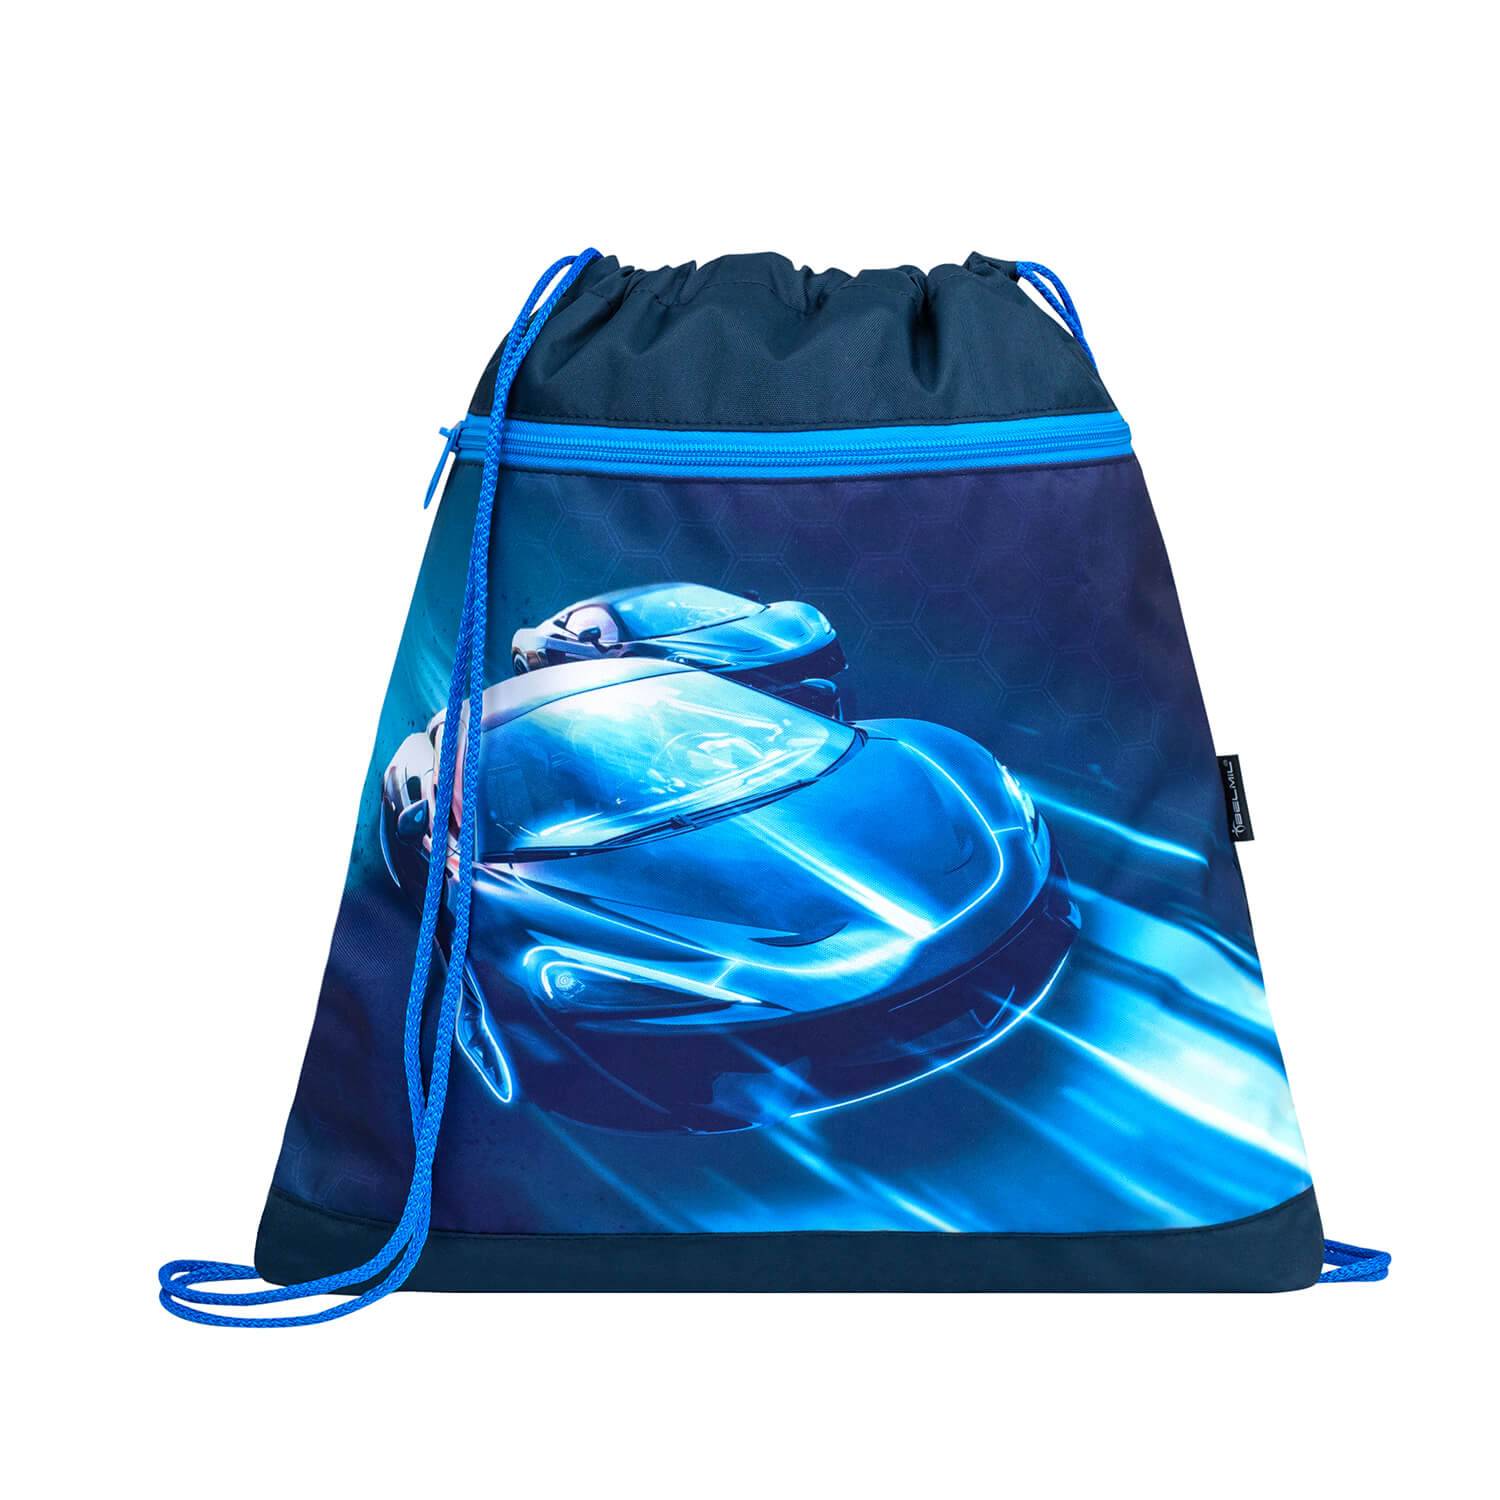 Mini-Fit Racing Blue Neon schoolbag set 4 pcs